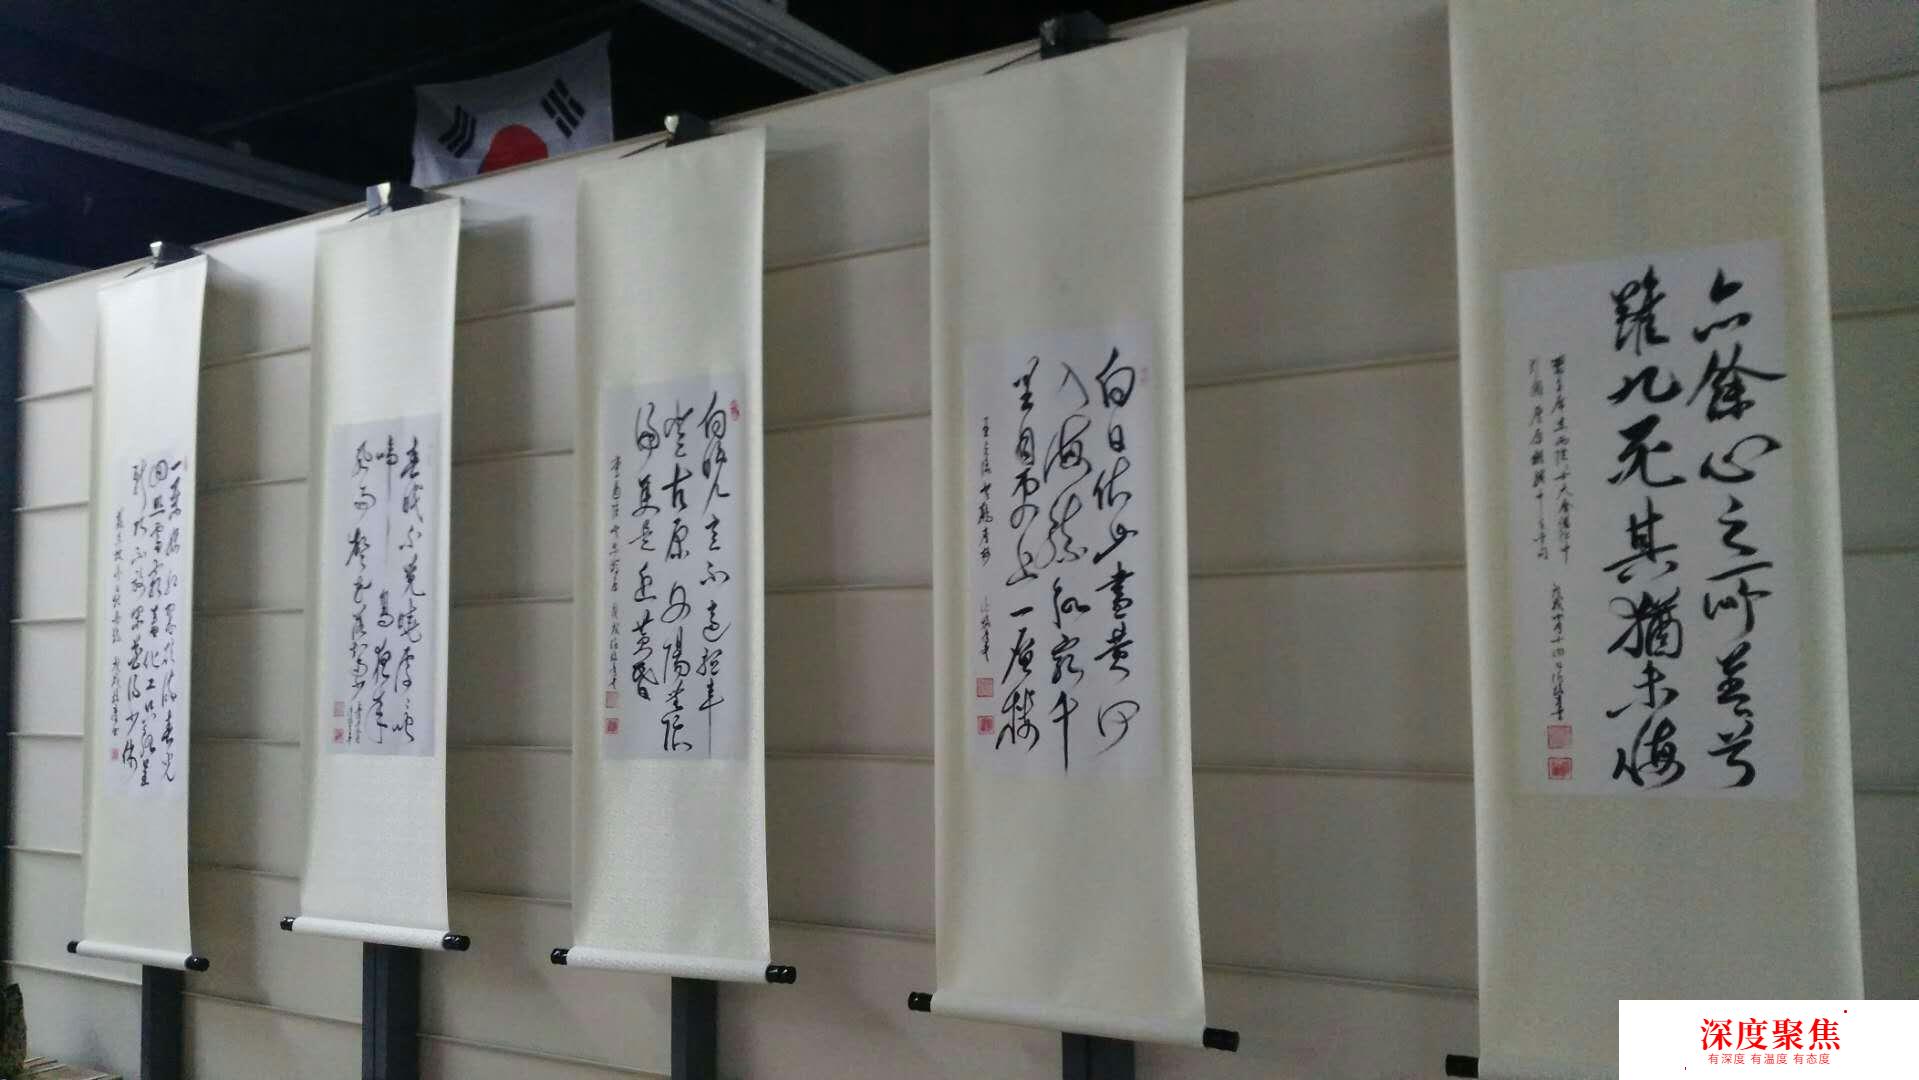 许焕章四十学日语、五十学电脑，八十向书法顶峰攀登